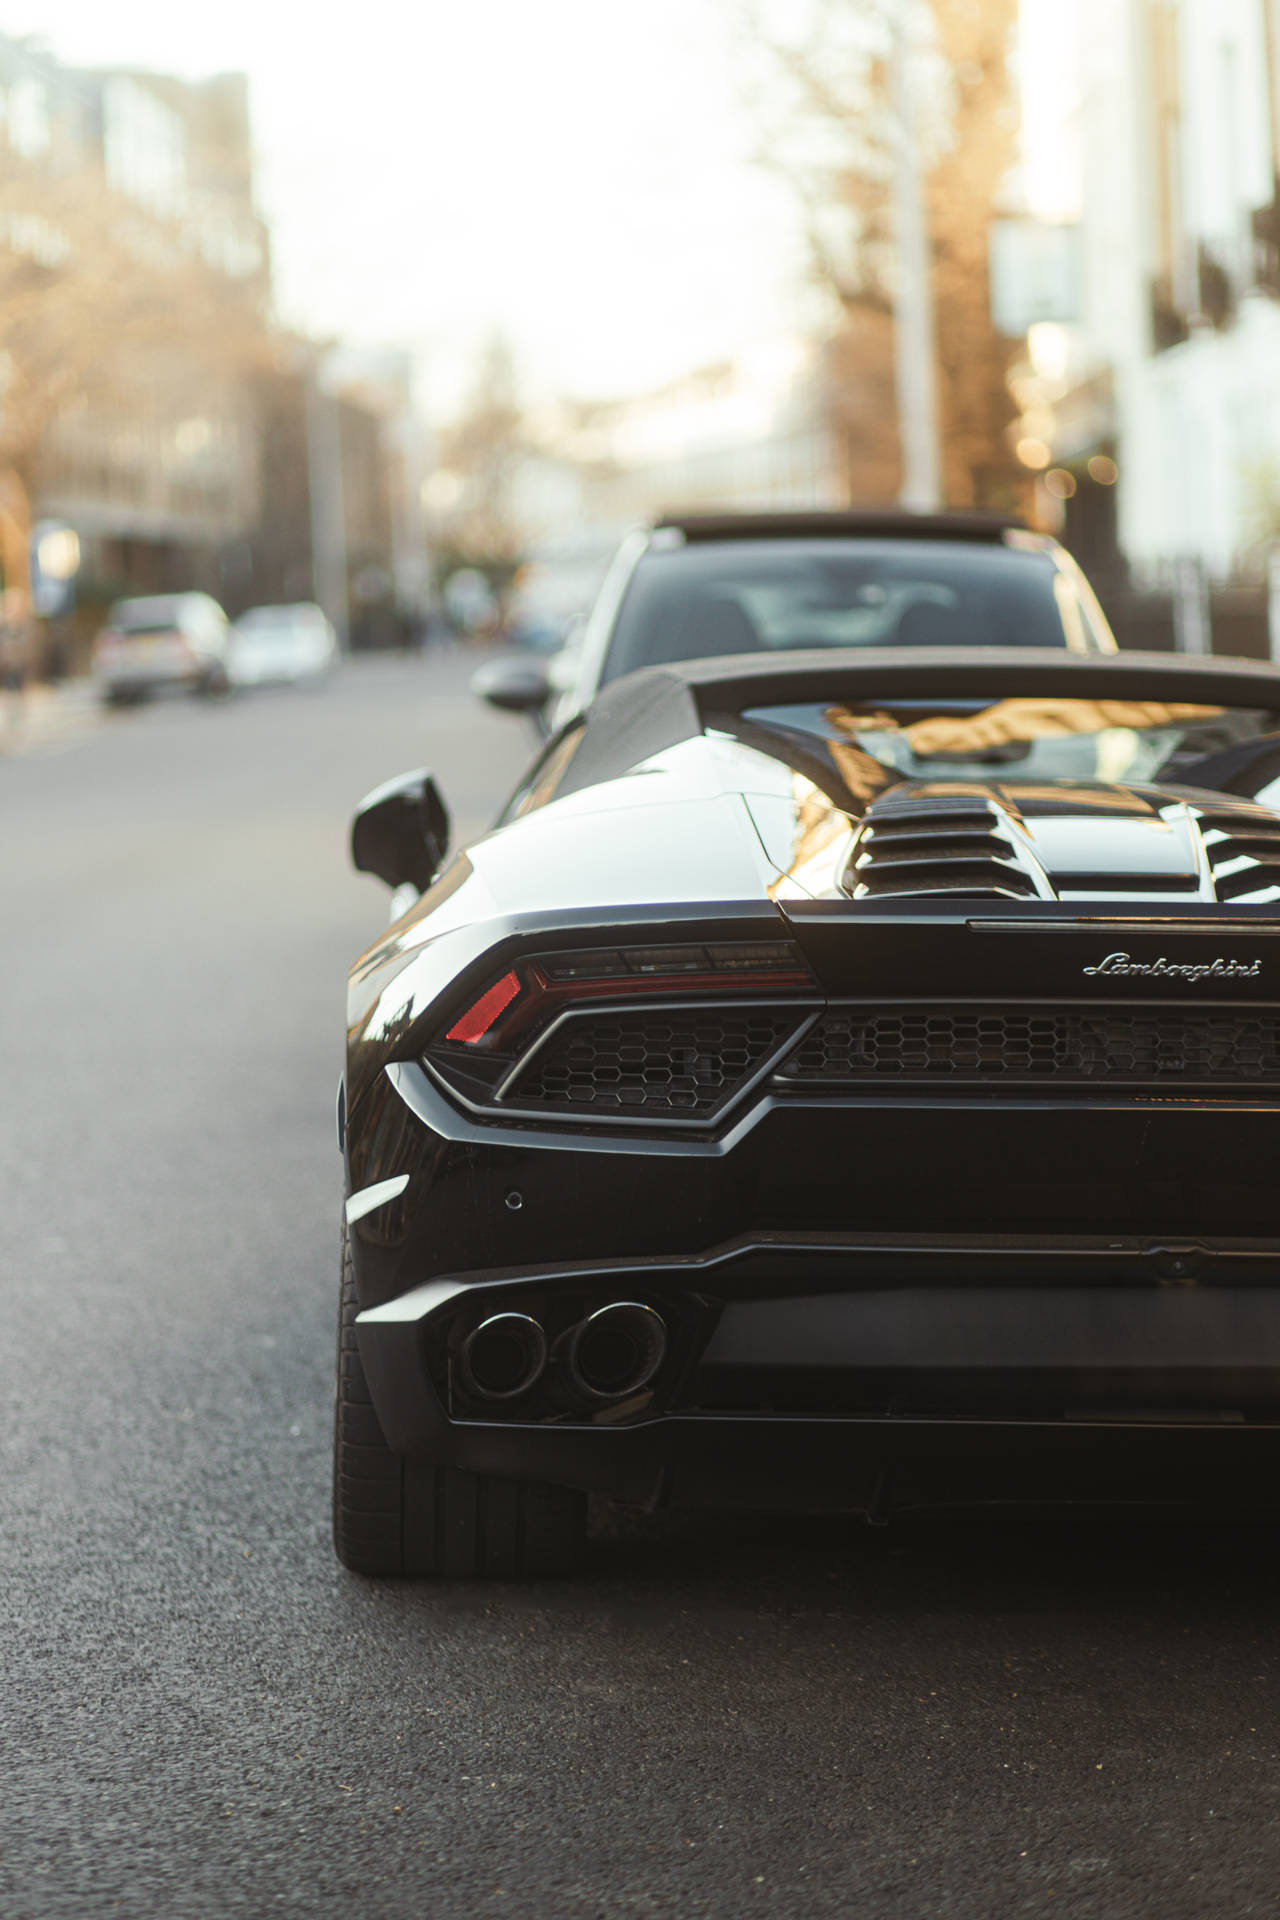 Black Lamborghini Luxury Car On The Road Wallpaper